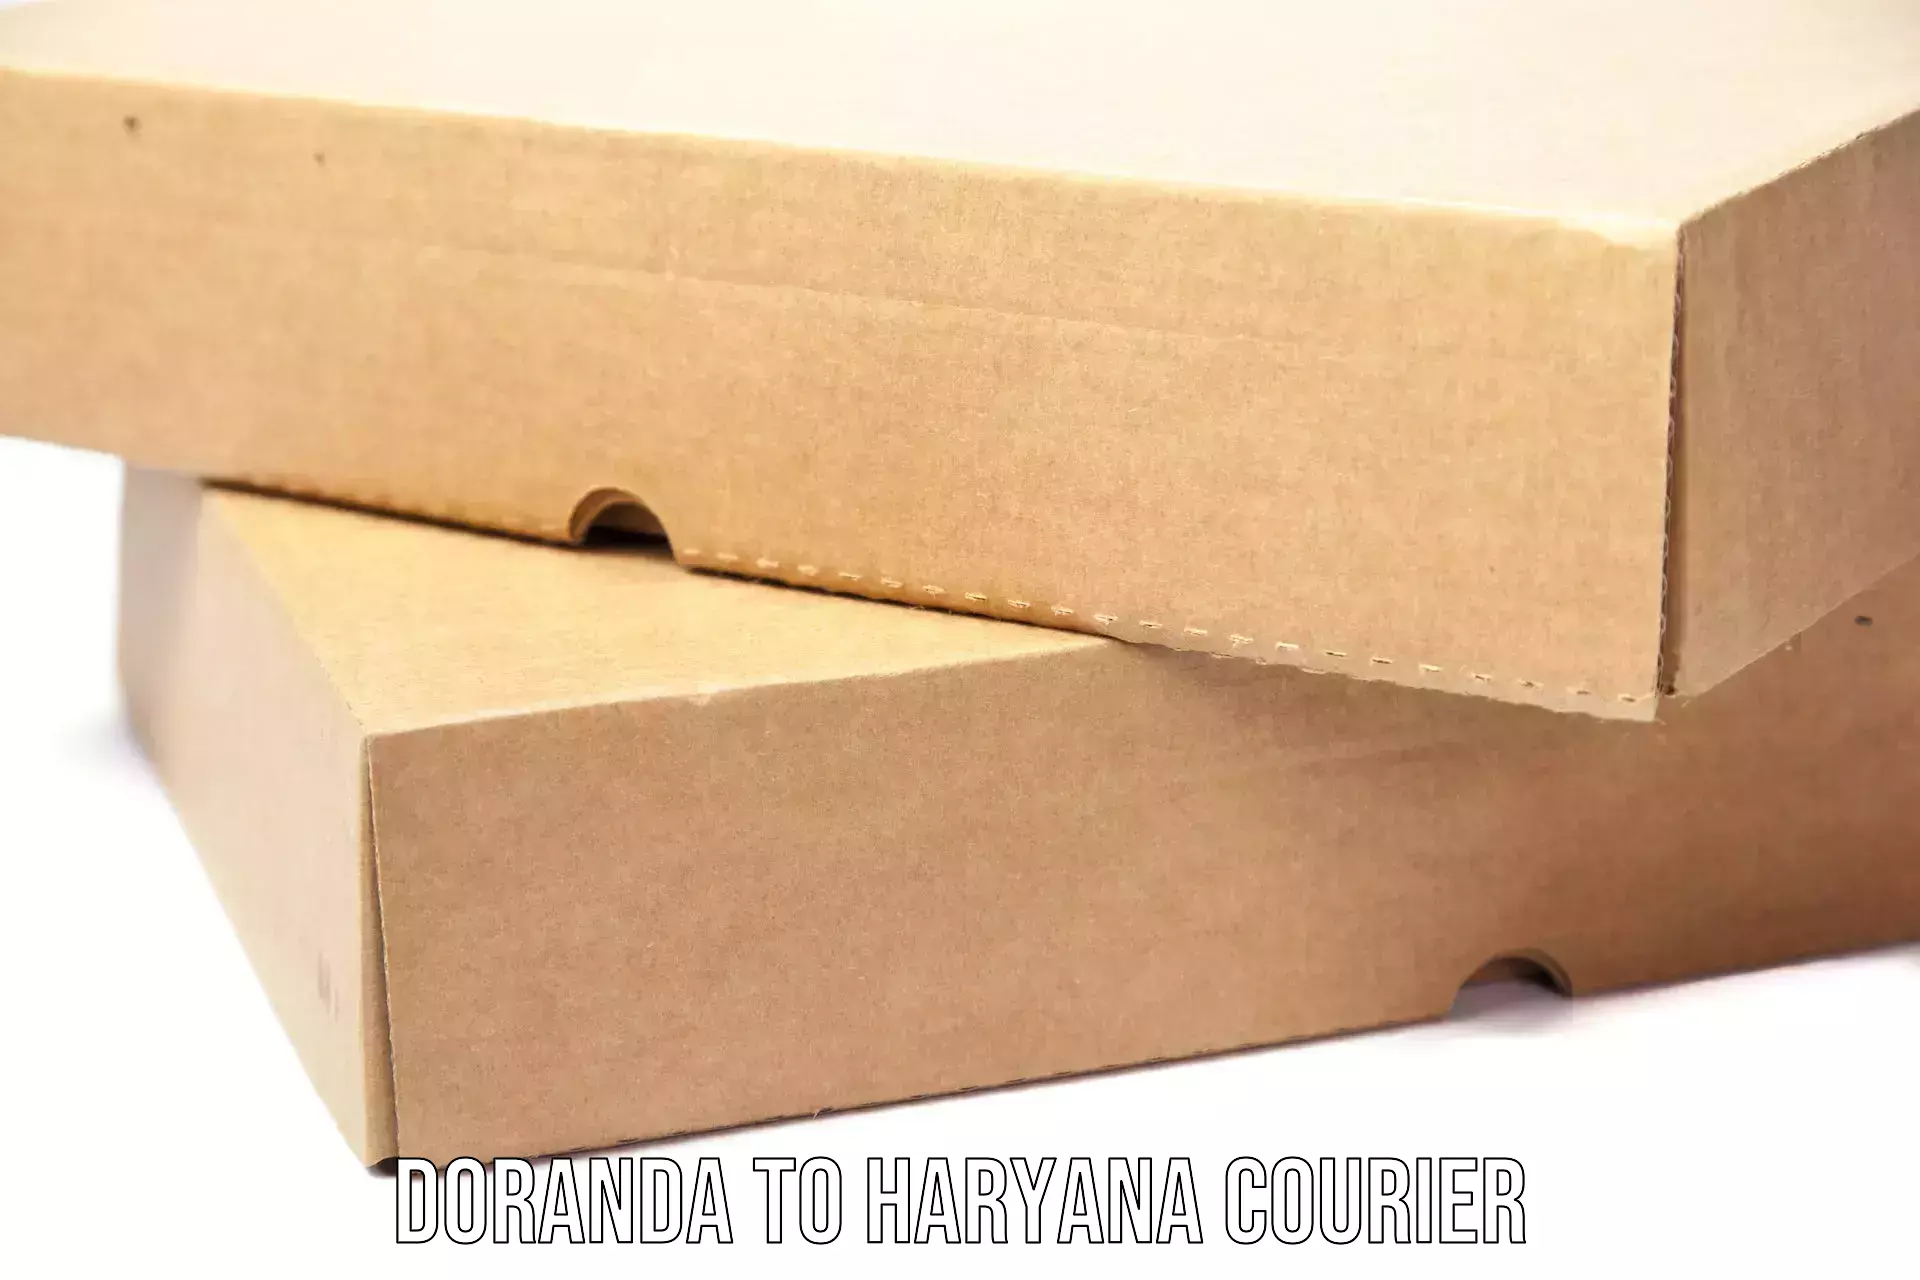 Reliable courier service Doranda to Julana